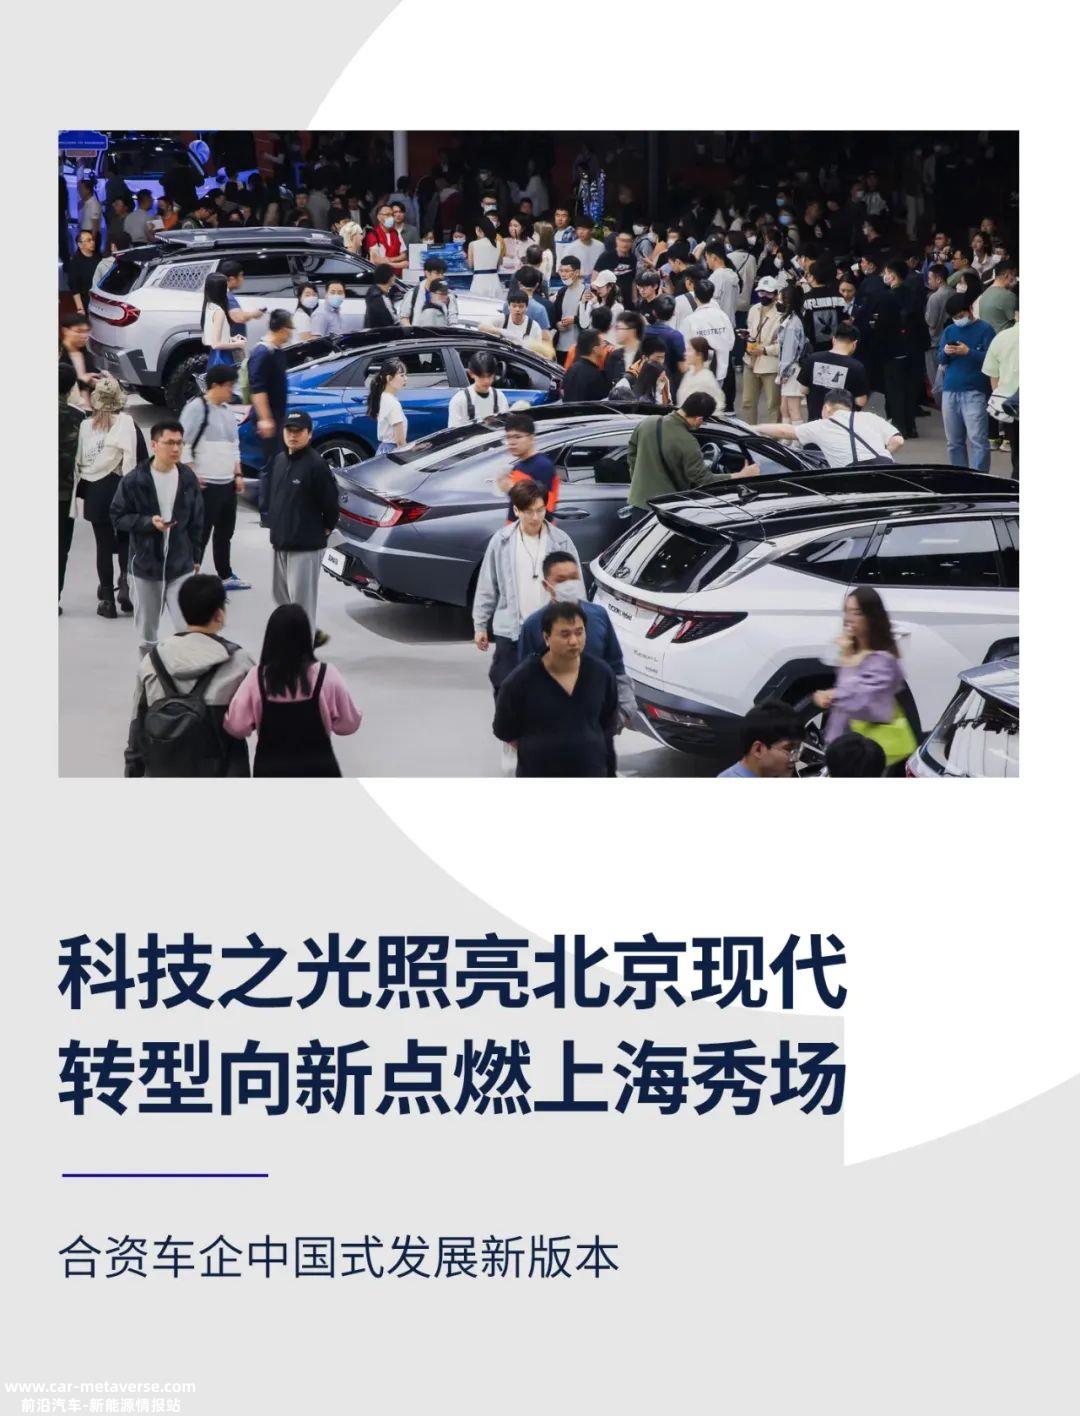 北京现代在燃料汽车领域仍优于市场